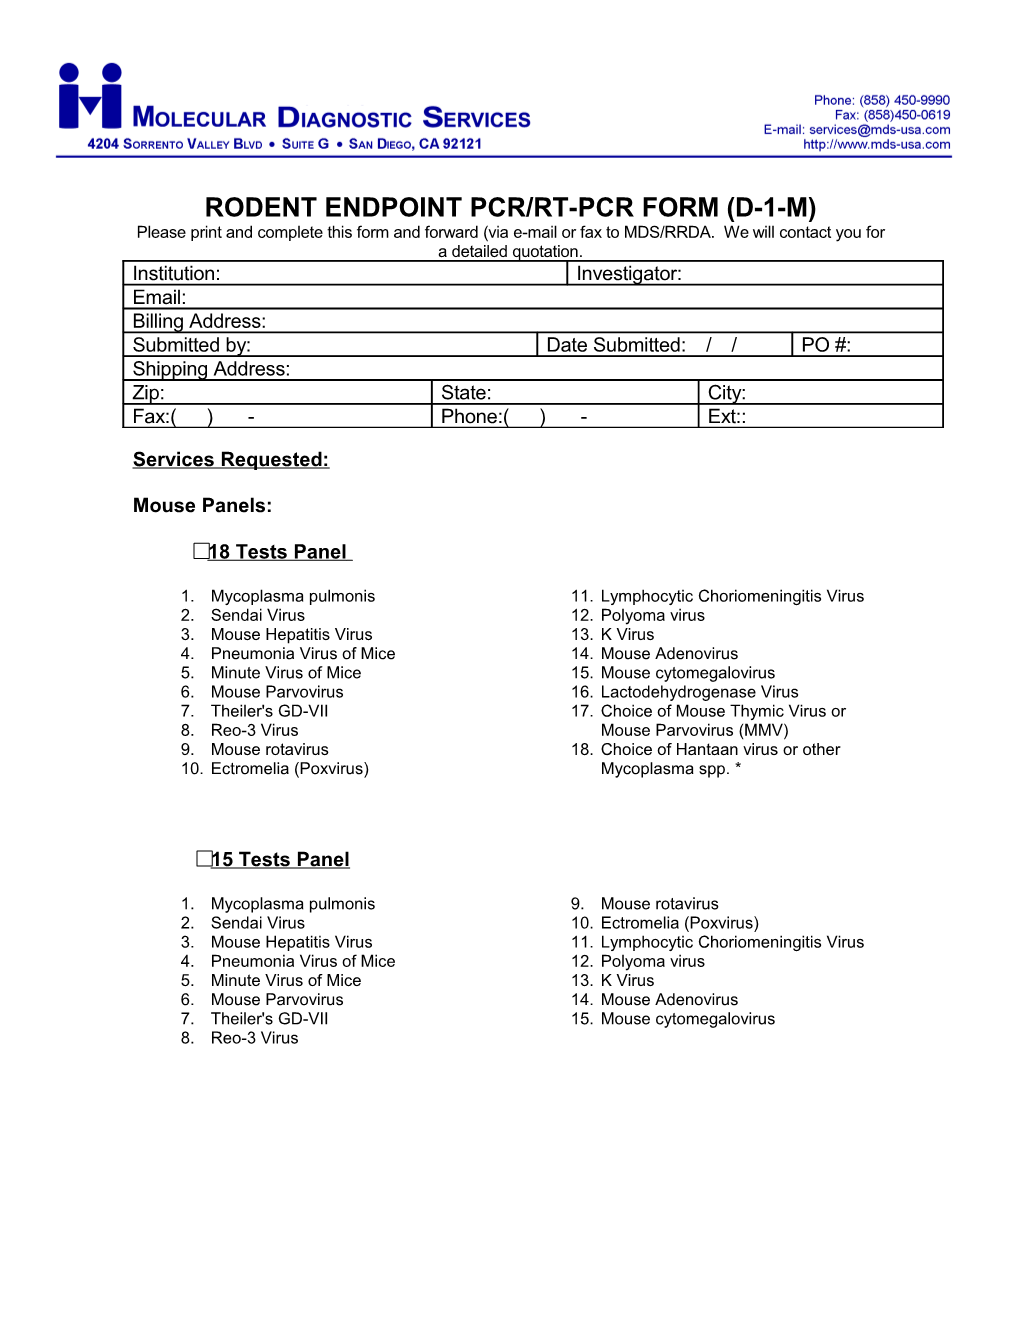 Endpoint Pcr/Rt-Pcr Form (D-1-M)